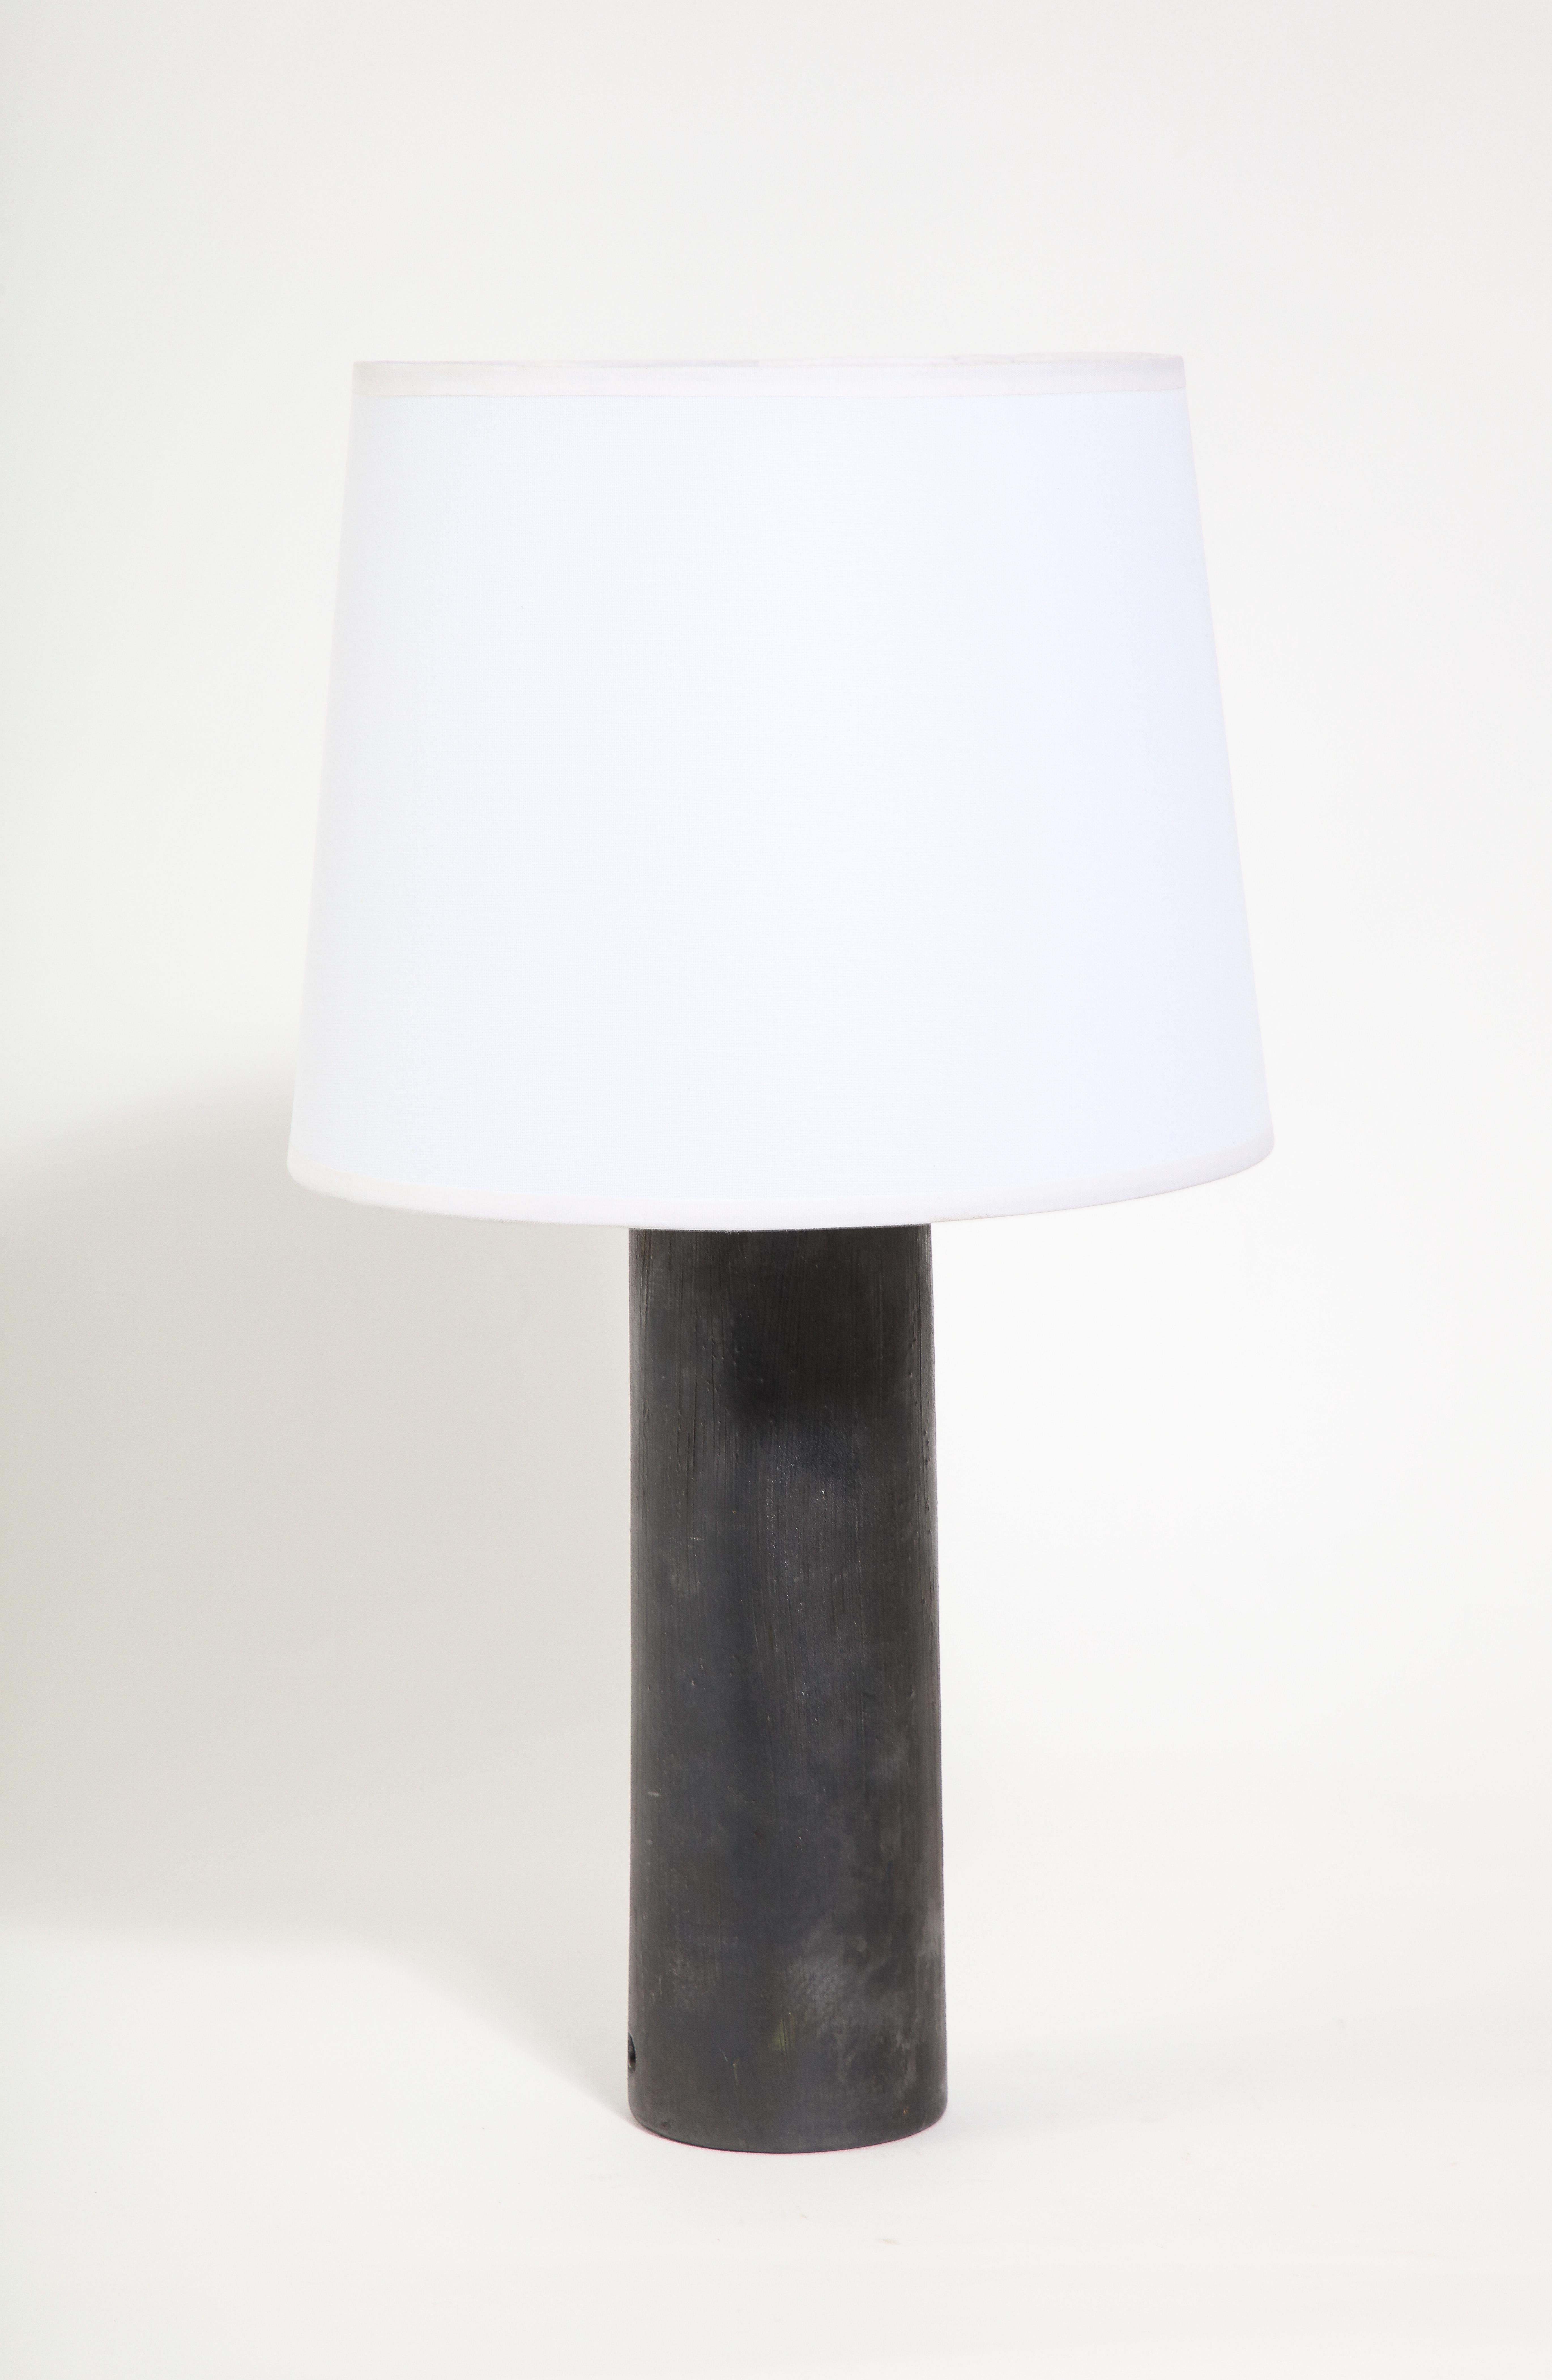 Keramische Zylinderlampe in der Art von Jouve mit einer metallischen Charcoal-Glasur.
